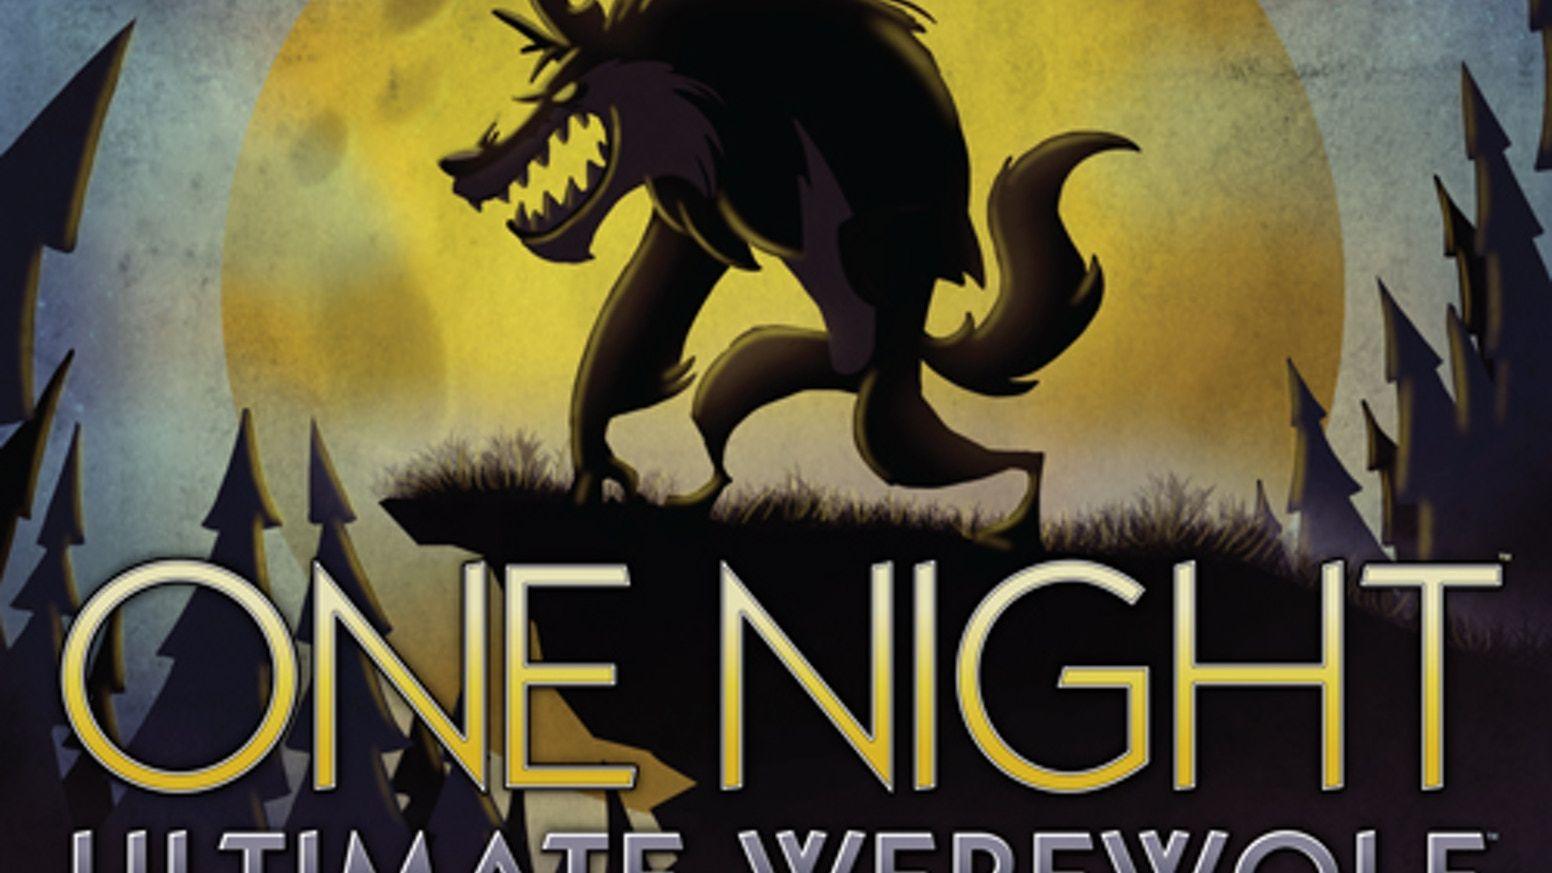 Werewolf Movie Logo - One Night Ultimate Werewolf by Bezier Games — Kickstarter